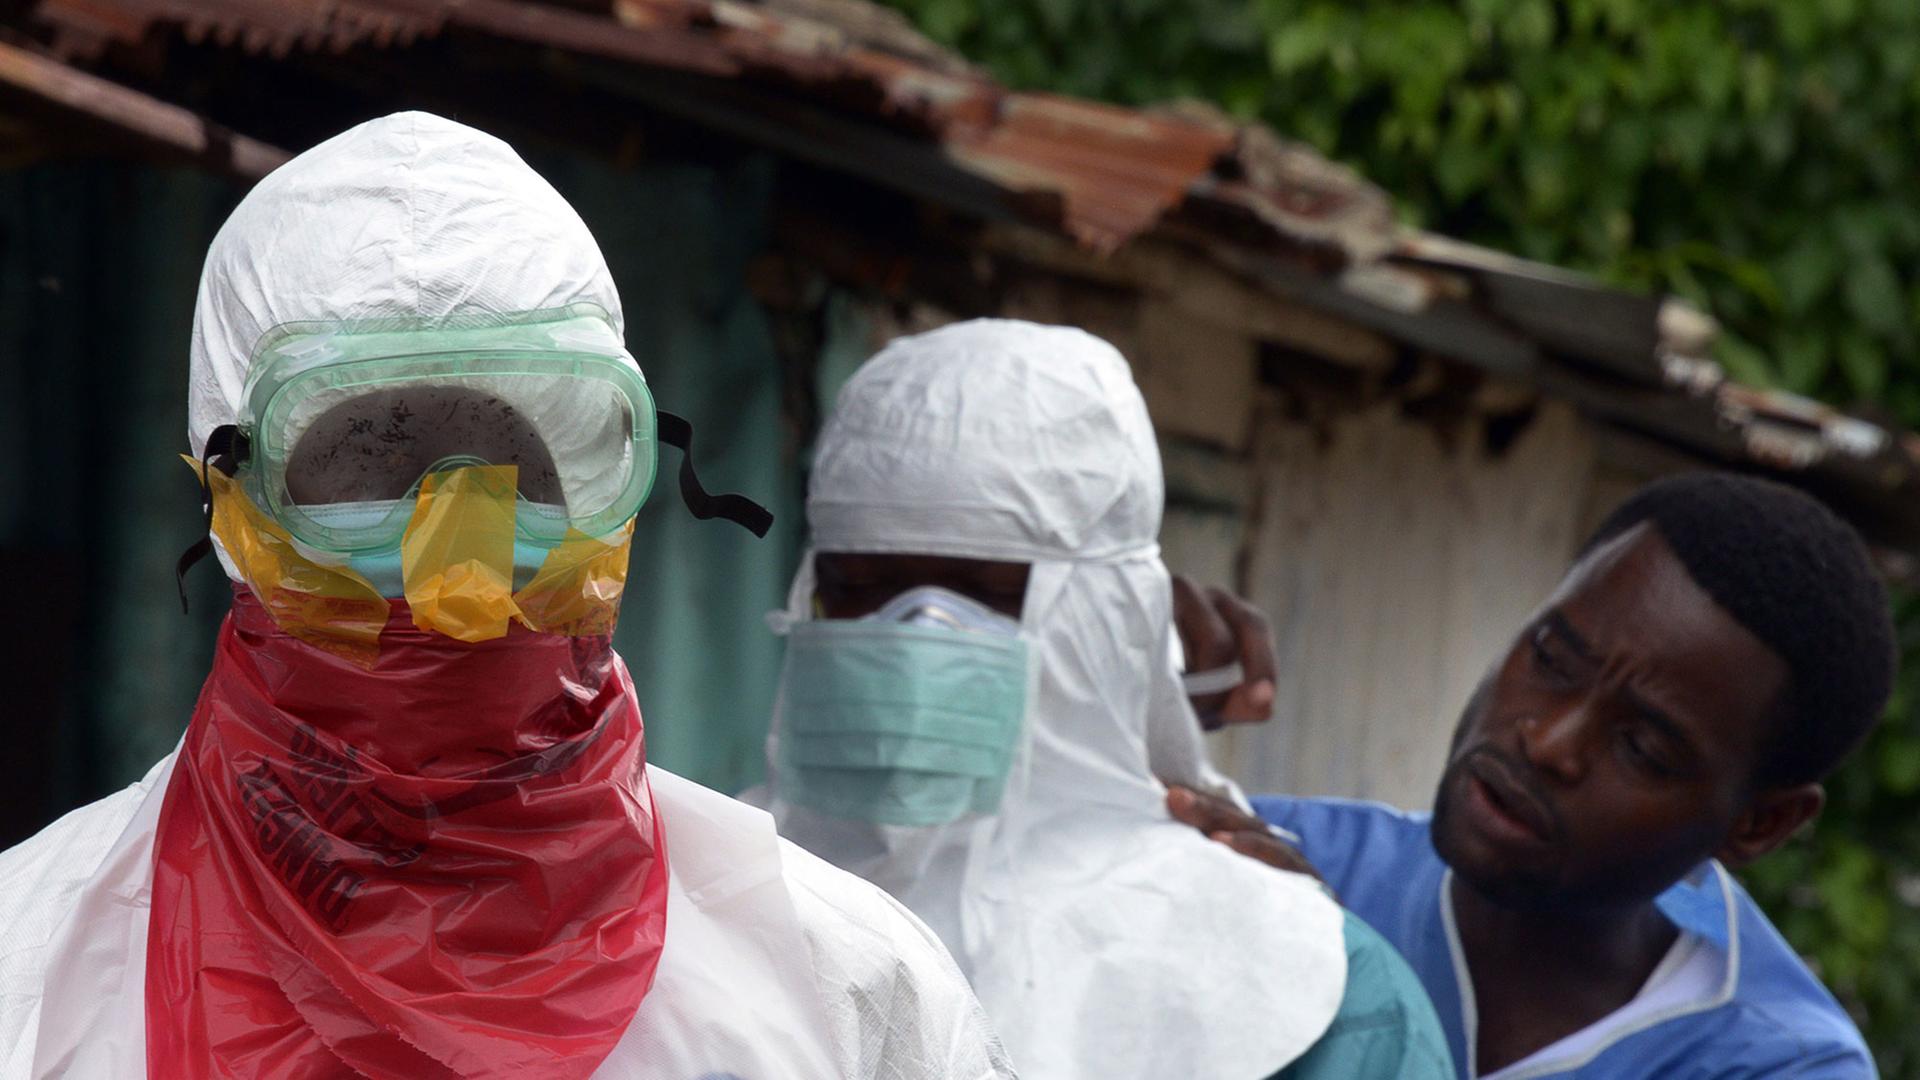 Ärzte in Liberias Hauptstadt Monrovia ziehen sich Schutzanzüge an, um mit Ebola infizierte Patienten zu behandeln.